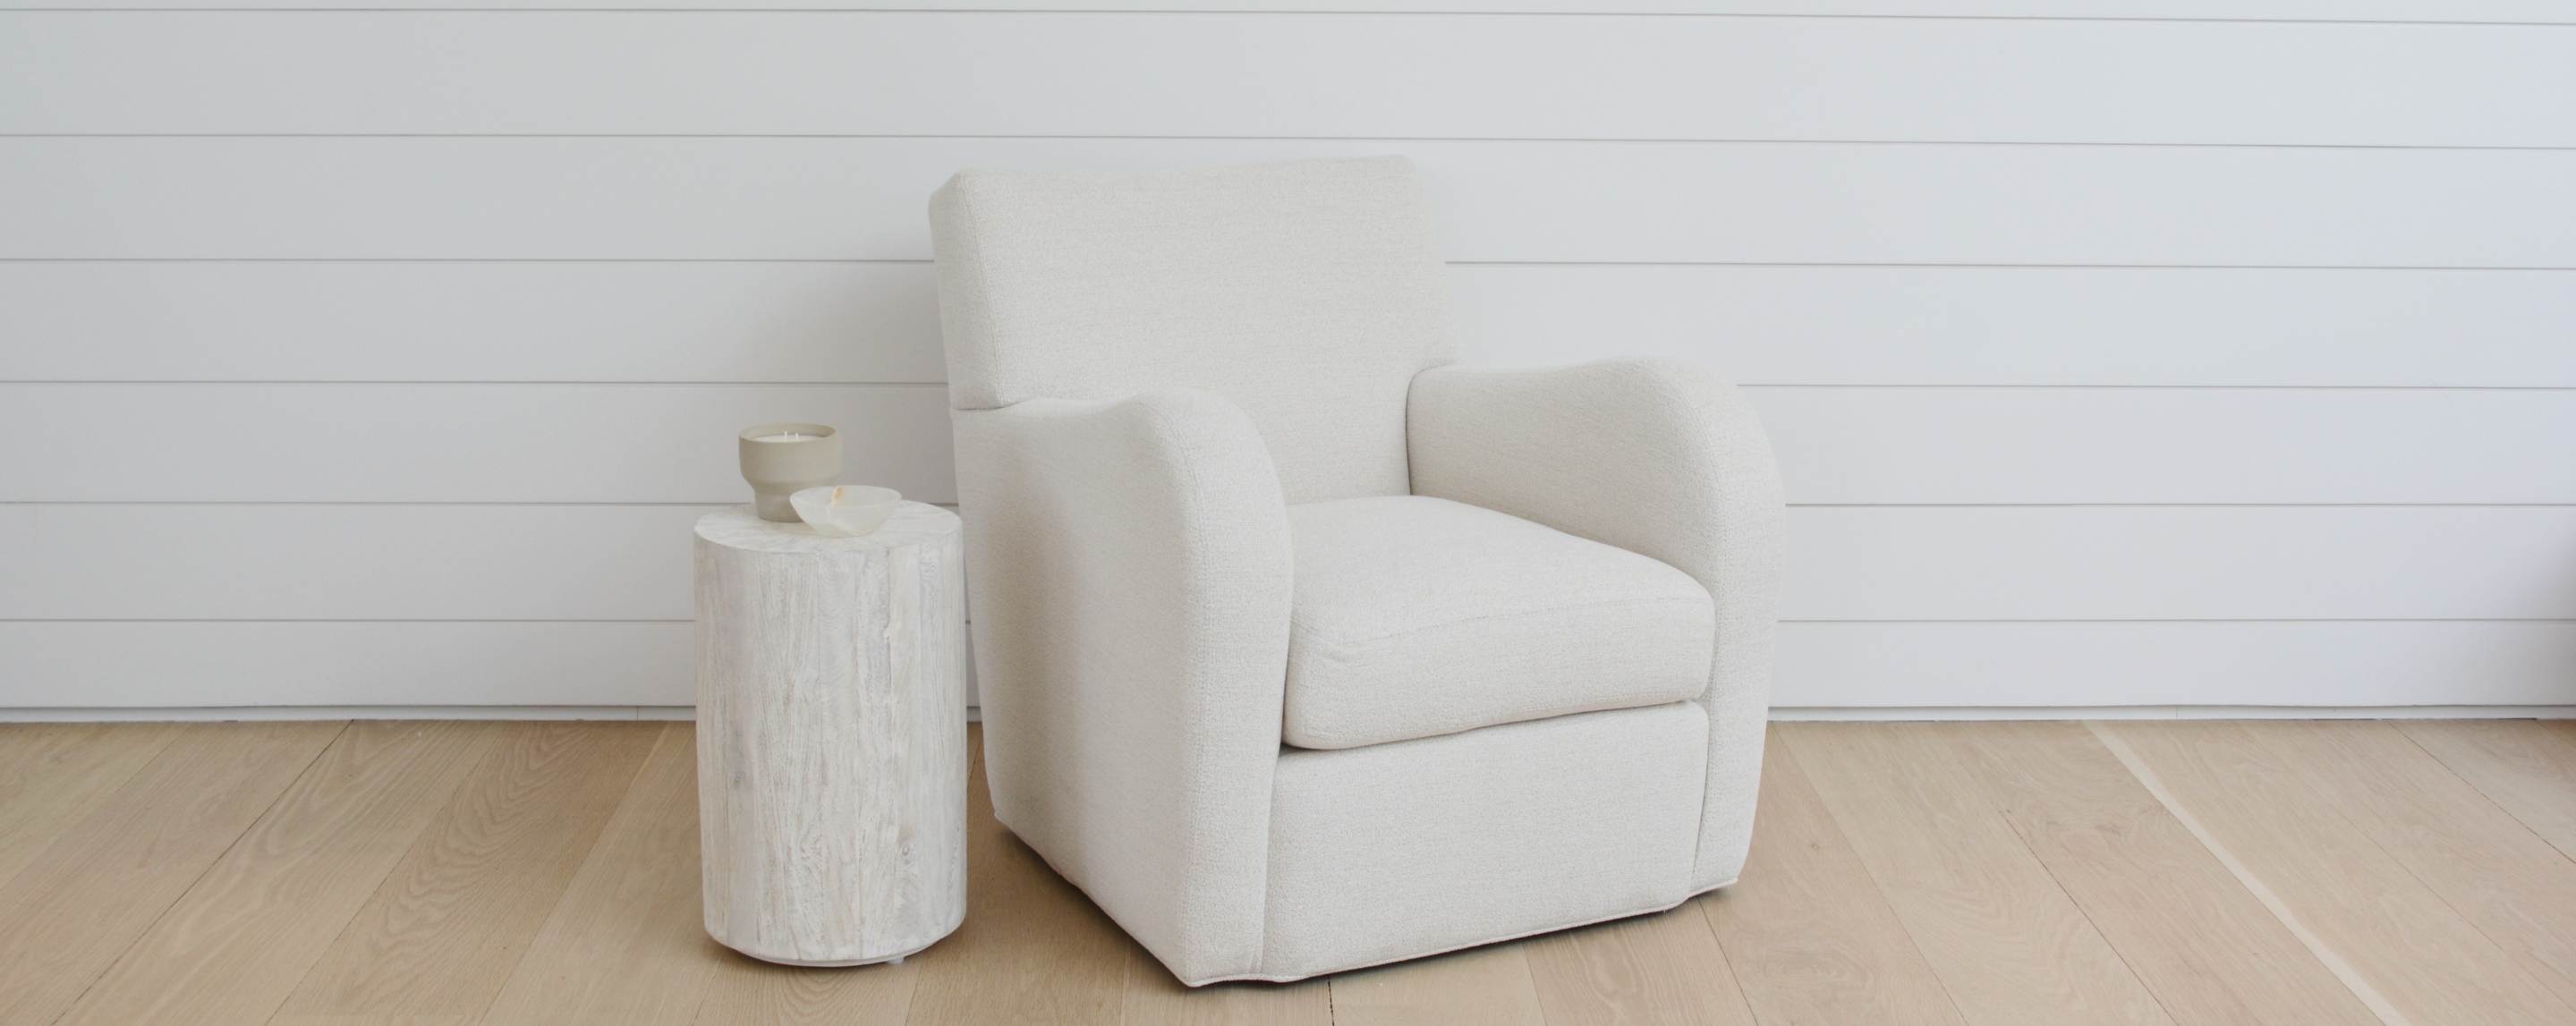 the greenport swivel chair in napa eggshell (floor models)